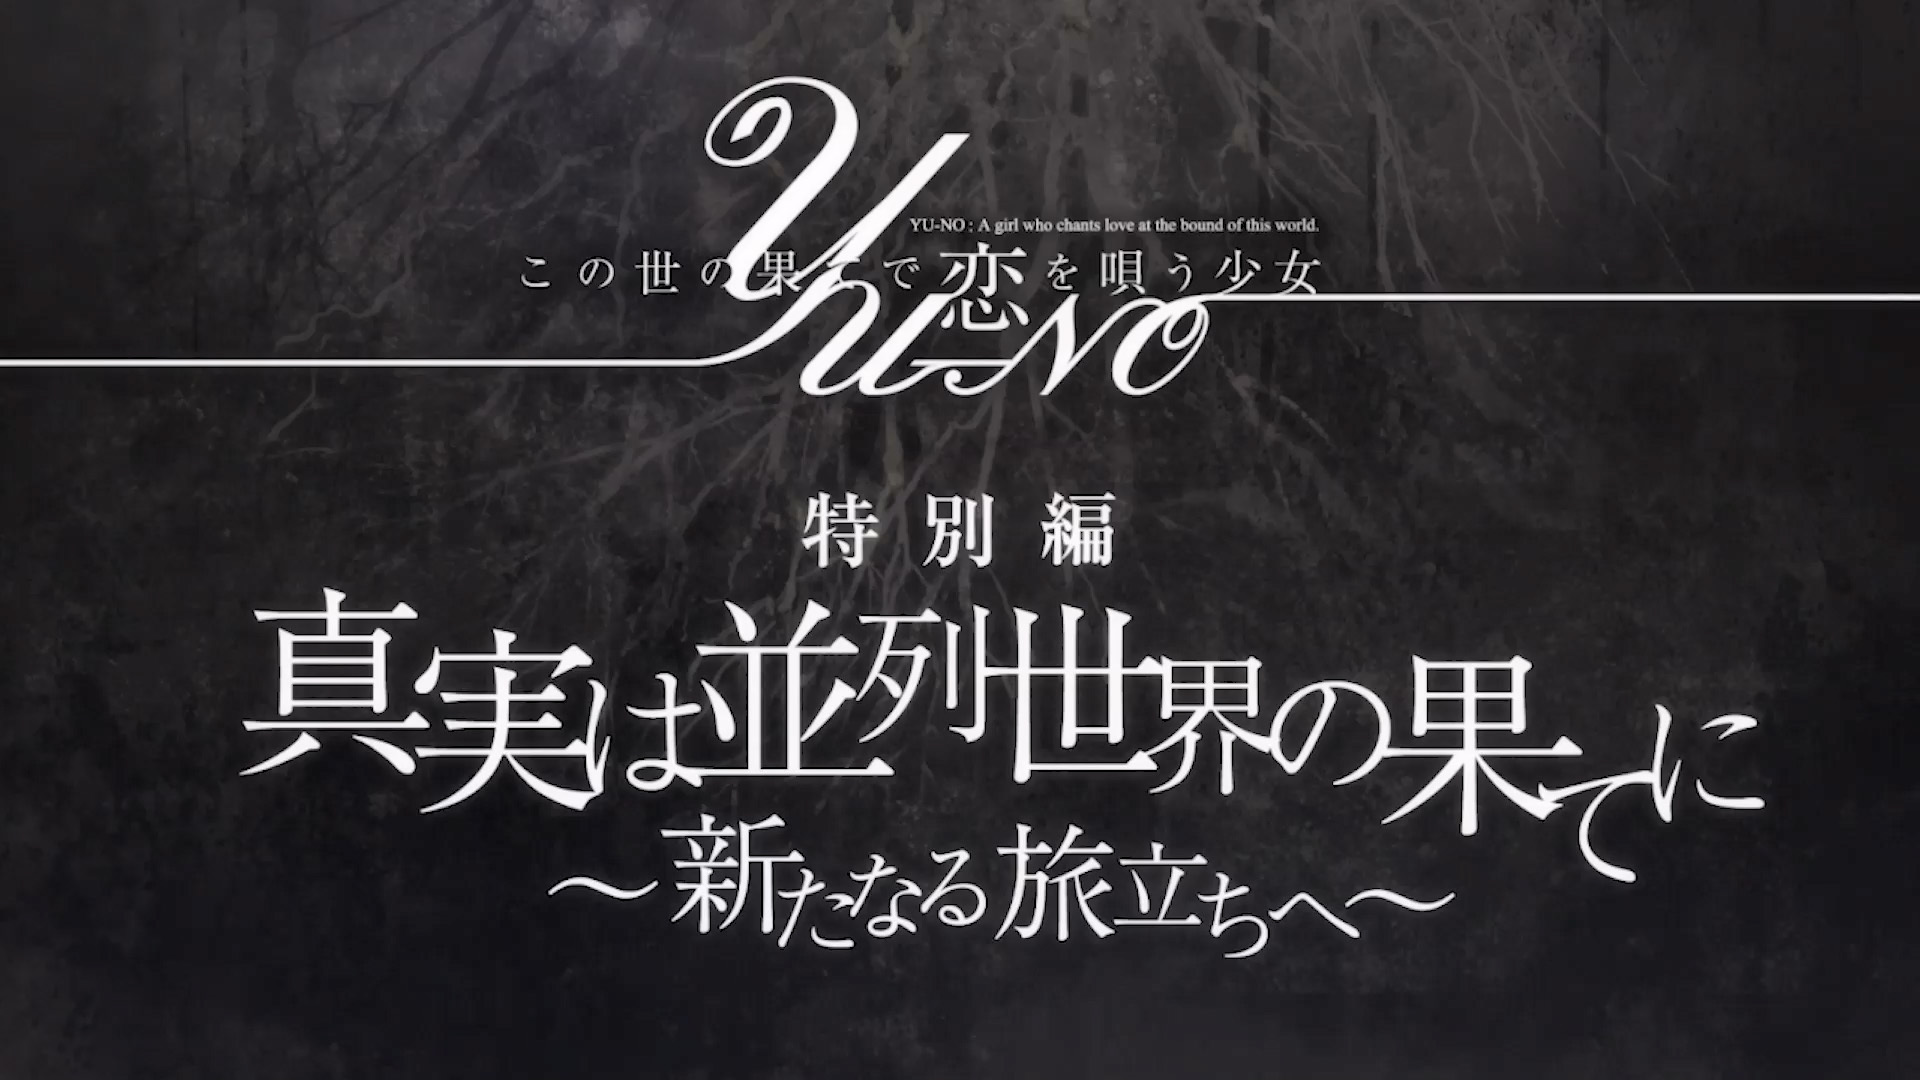 TVアニメ『この果てで恋を唄う少女YU-NO』「特別編」 (C)MAGES./PROJECT YU-NO